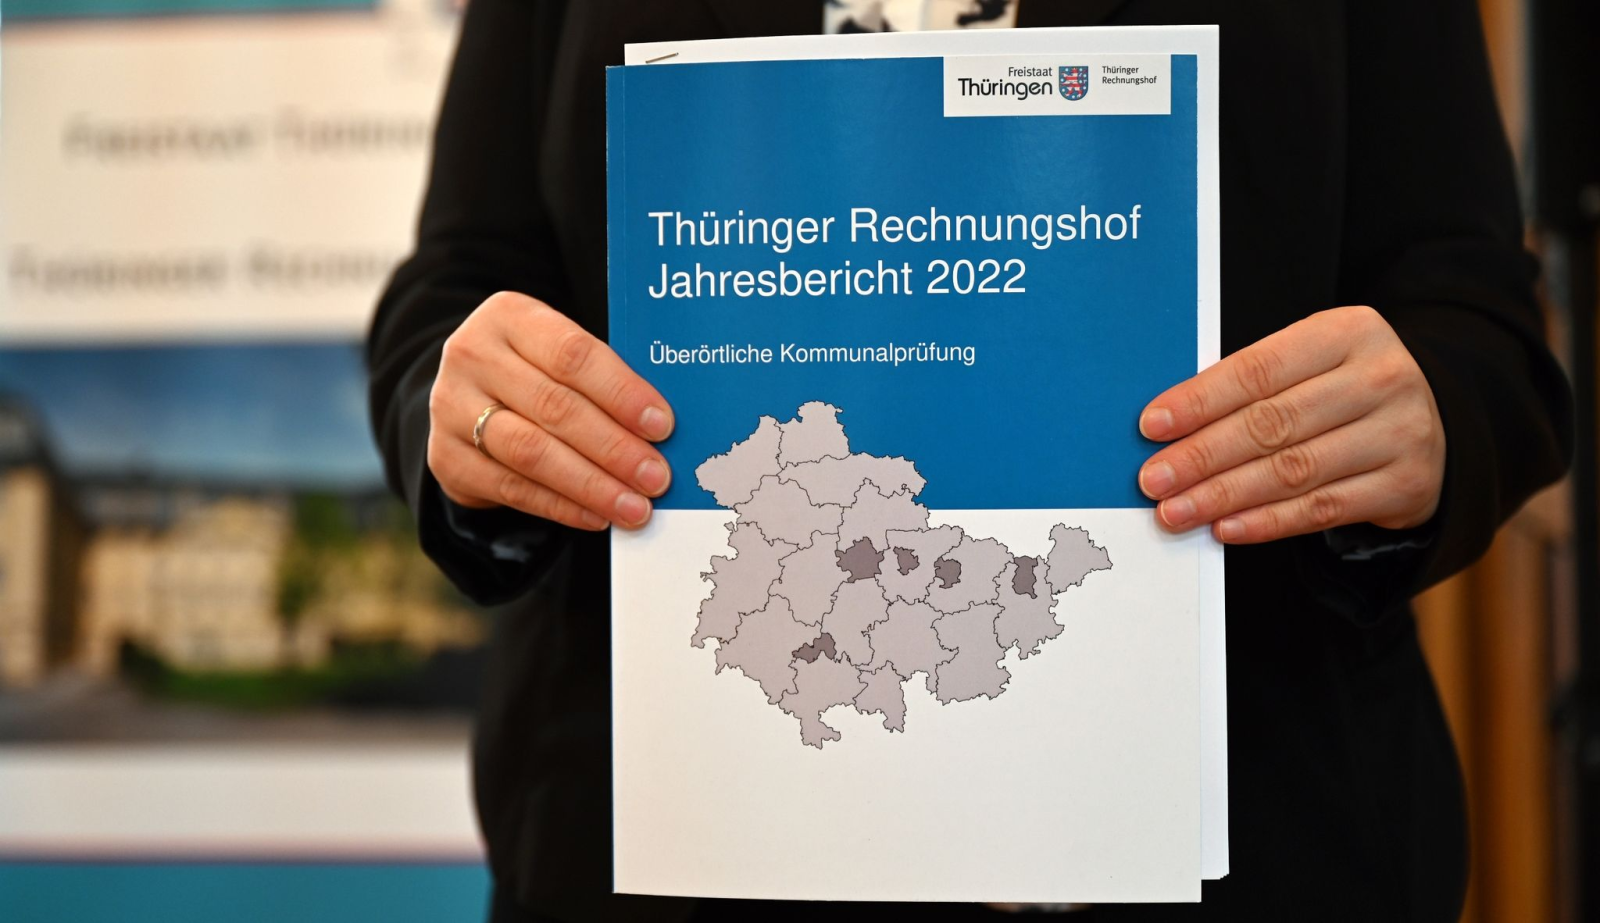 Sebastian Dette stellt den Jahresbericht 2022 zur Überörtlichen Kommunalprüfung vor.